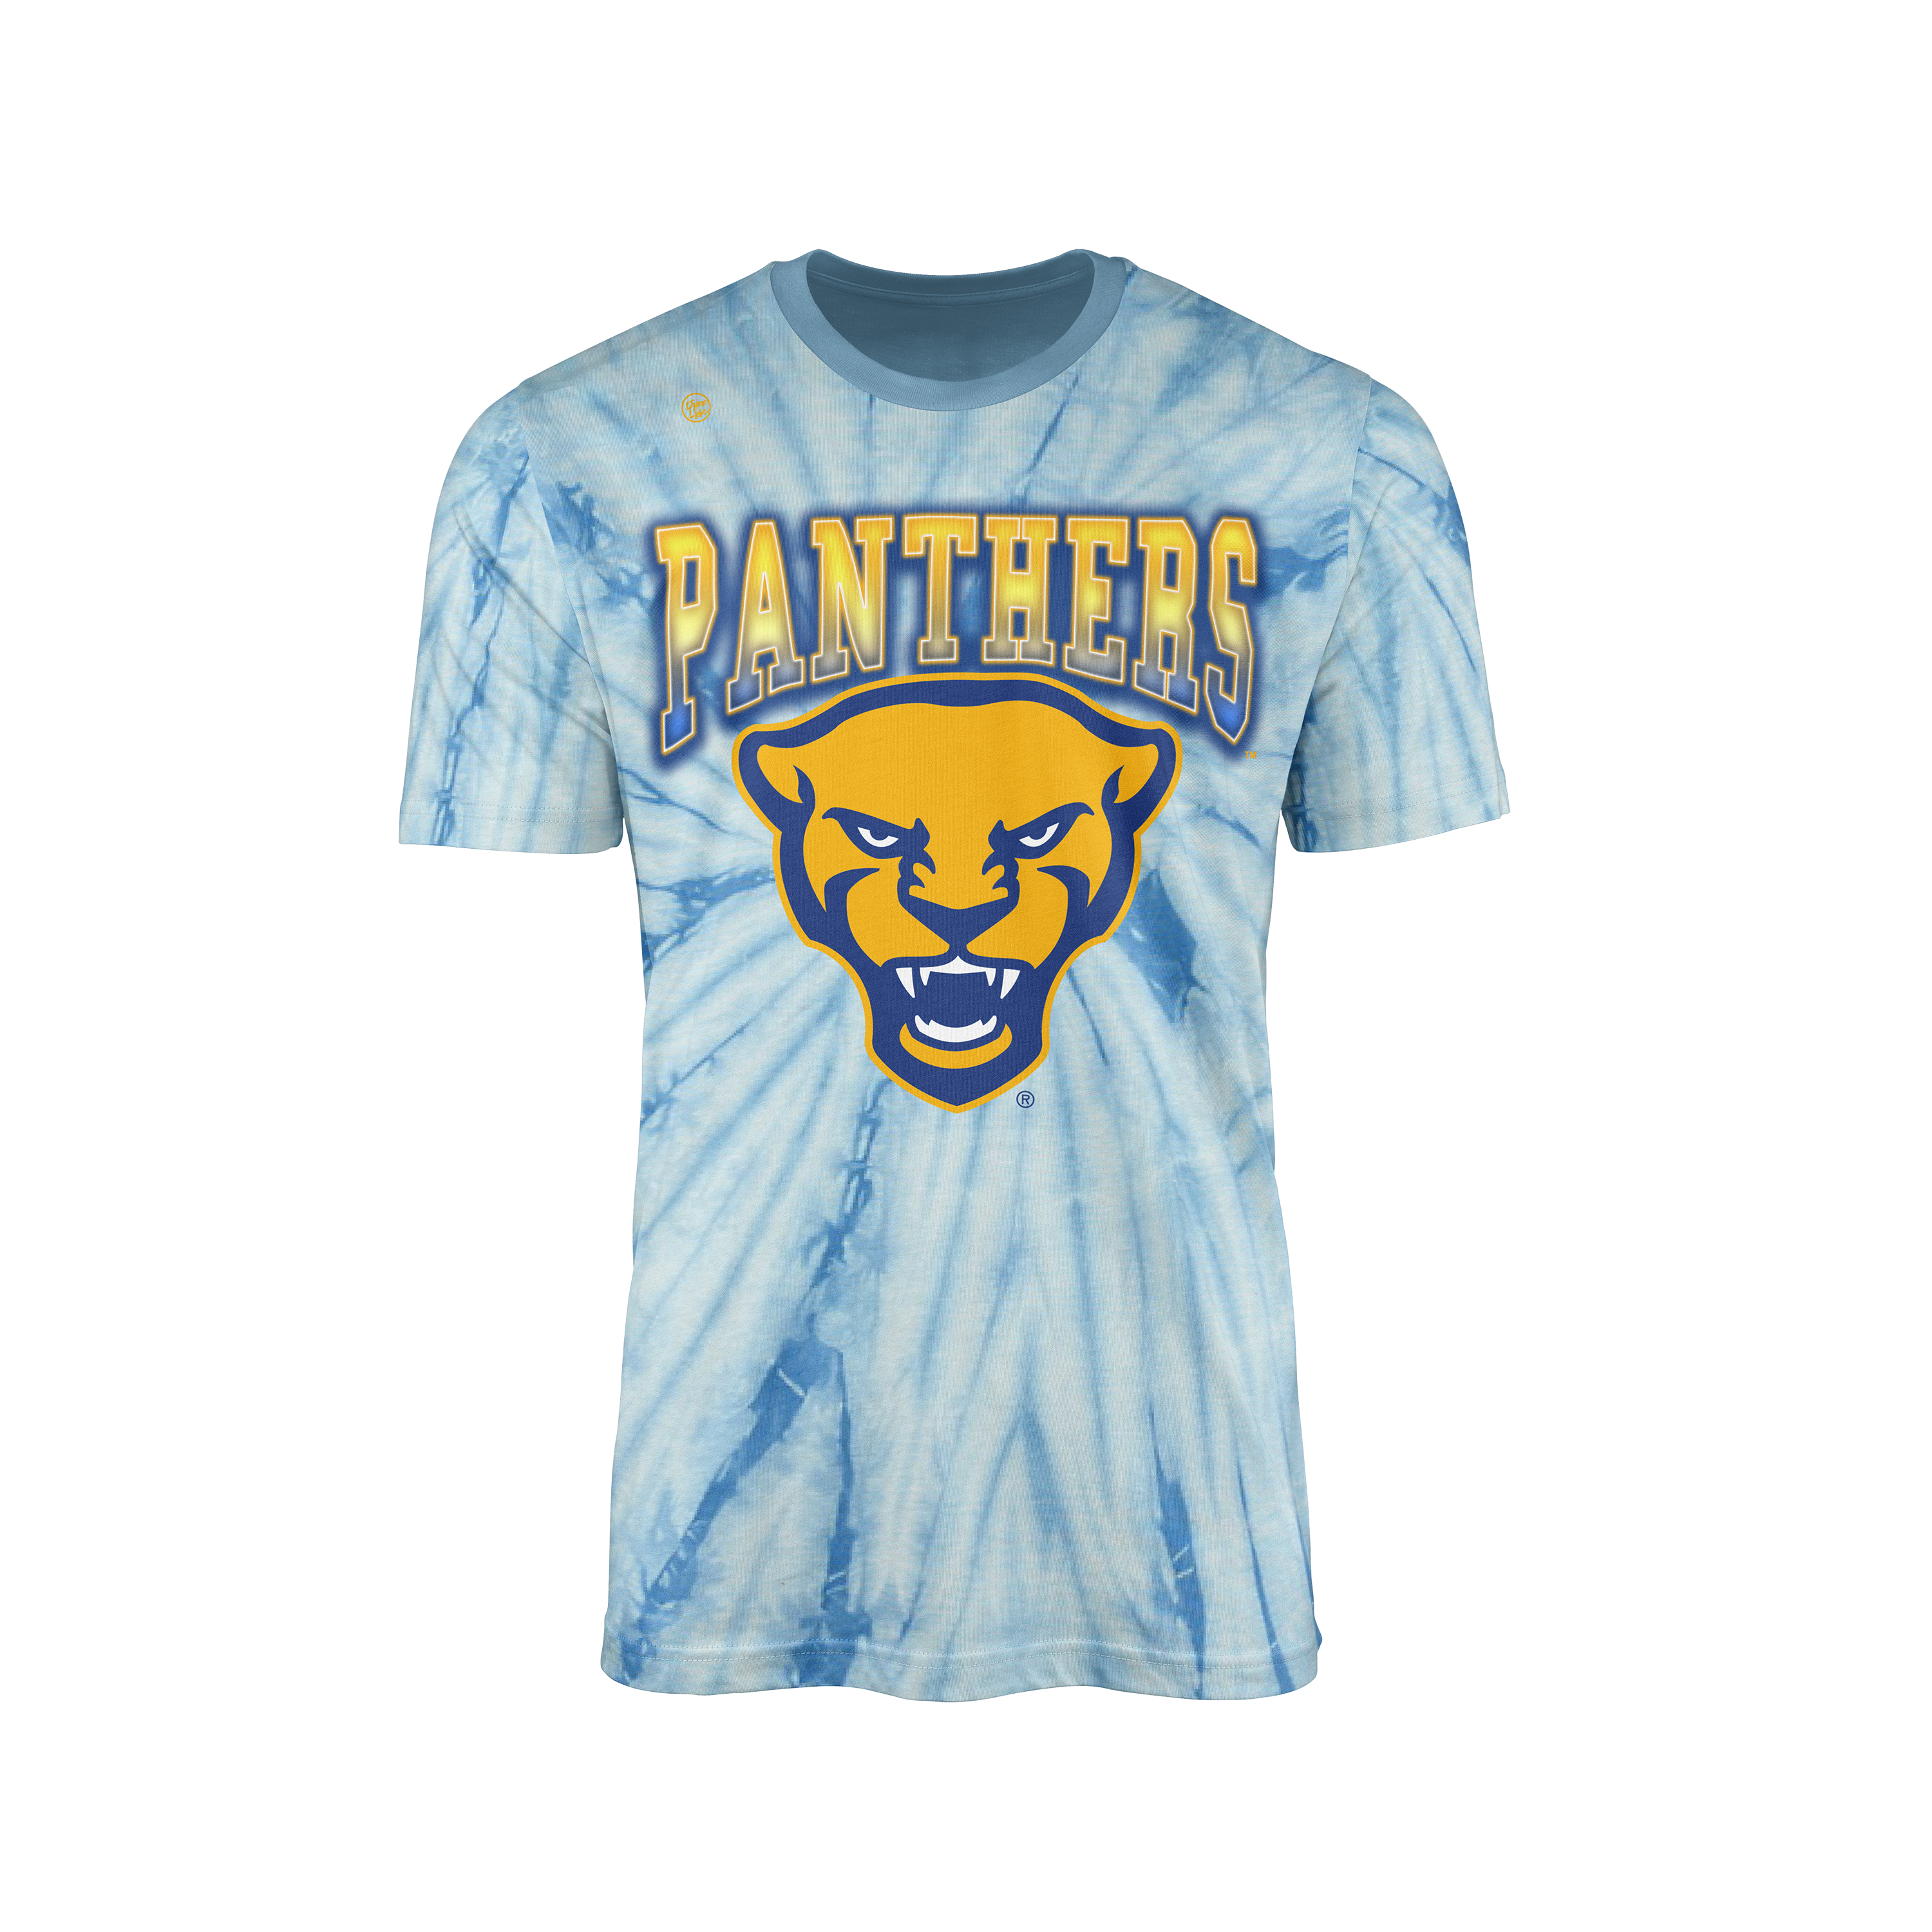 Pittsburgh Panthers Men’s Tie Dye Team Tee